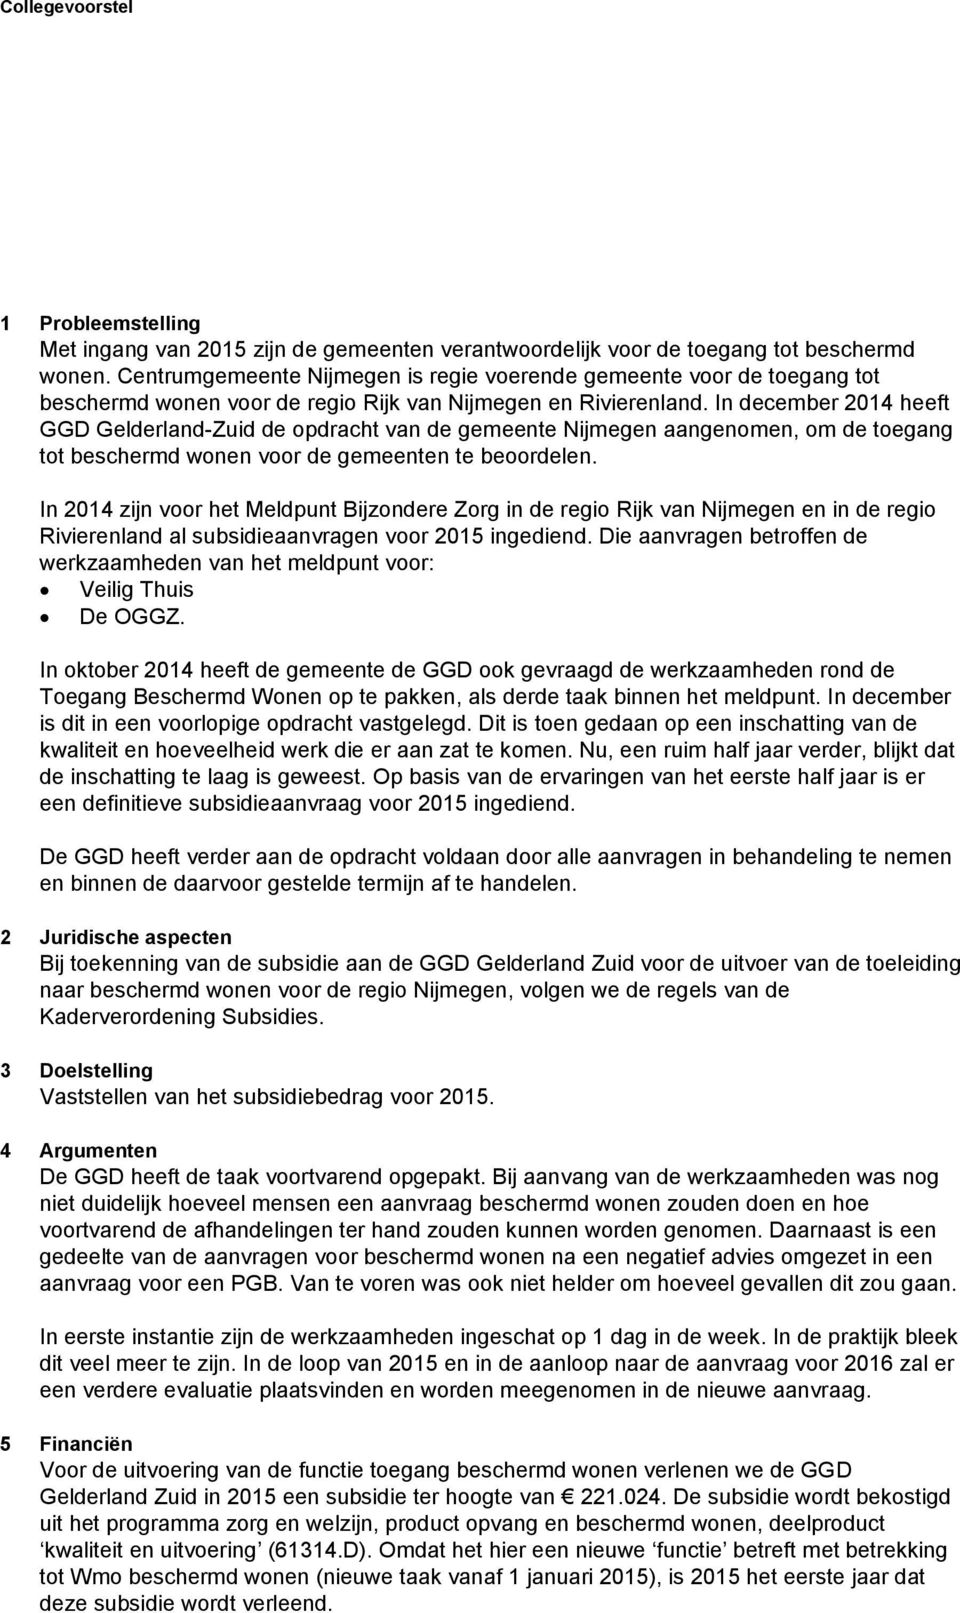 In december 2014 heeft GGD Gelderland-Zuid de opdracht van de gemeente Nijmegen aangenomen, om de toegang tot beschermd wonen voor de gemeenten te beoordelen.